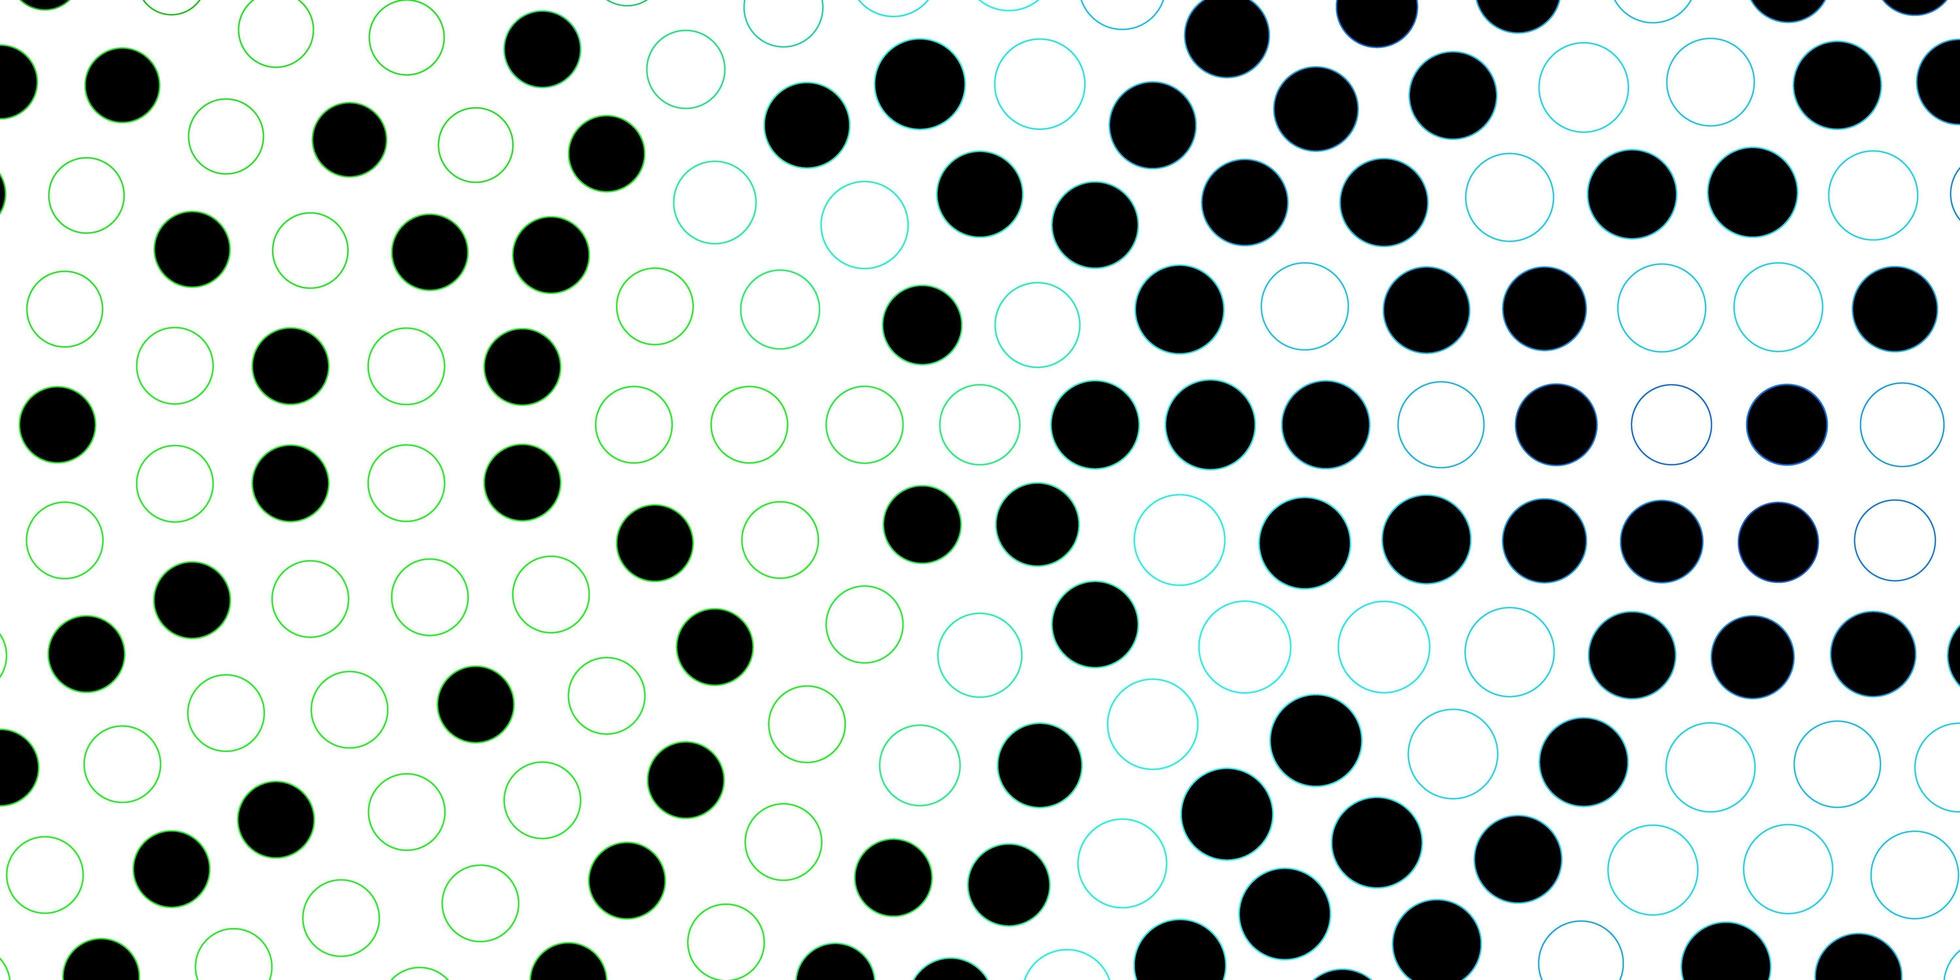 toile de fond de vecteur bleu foncé, vert avec des points. illustration avec ensemble de sphères abstraites colorées brillantes. modèle pour livrets, dépliants.